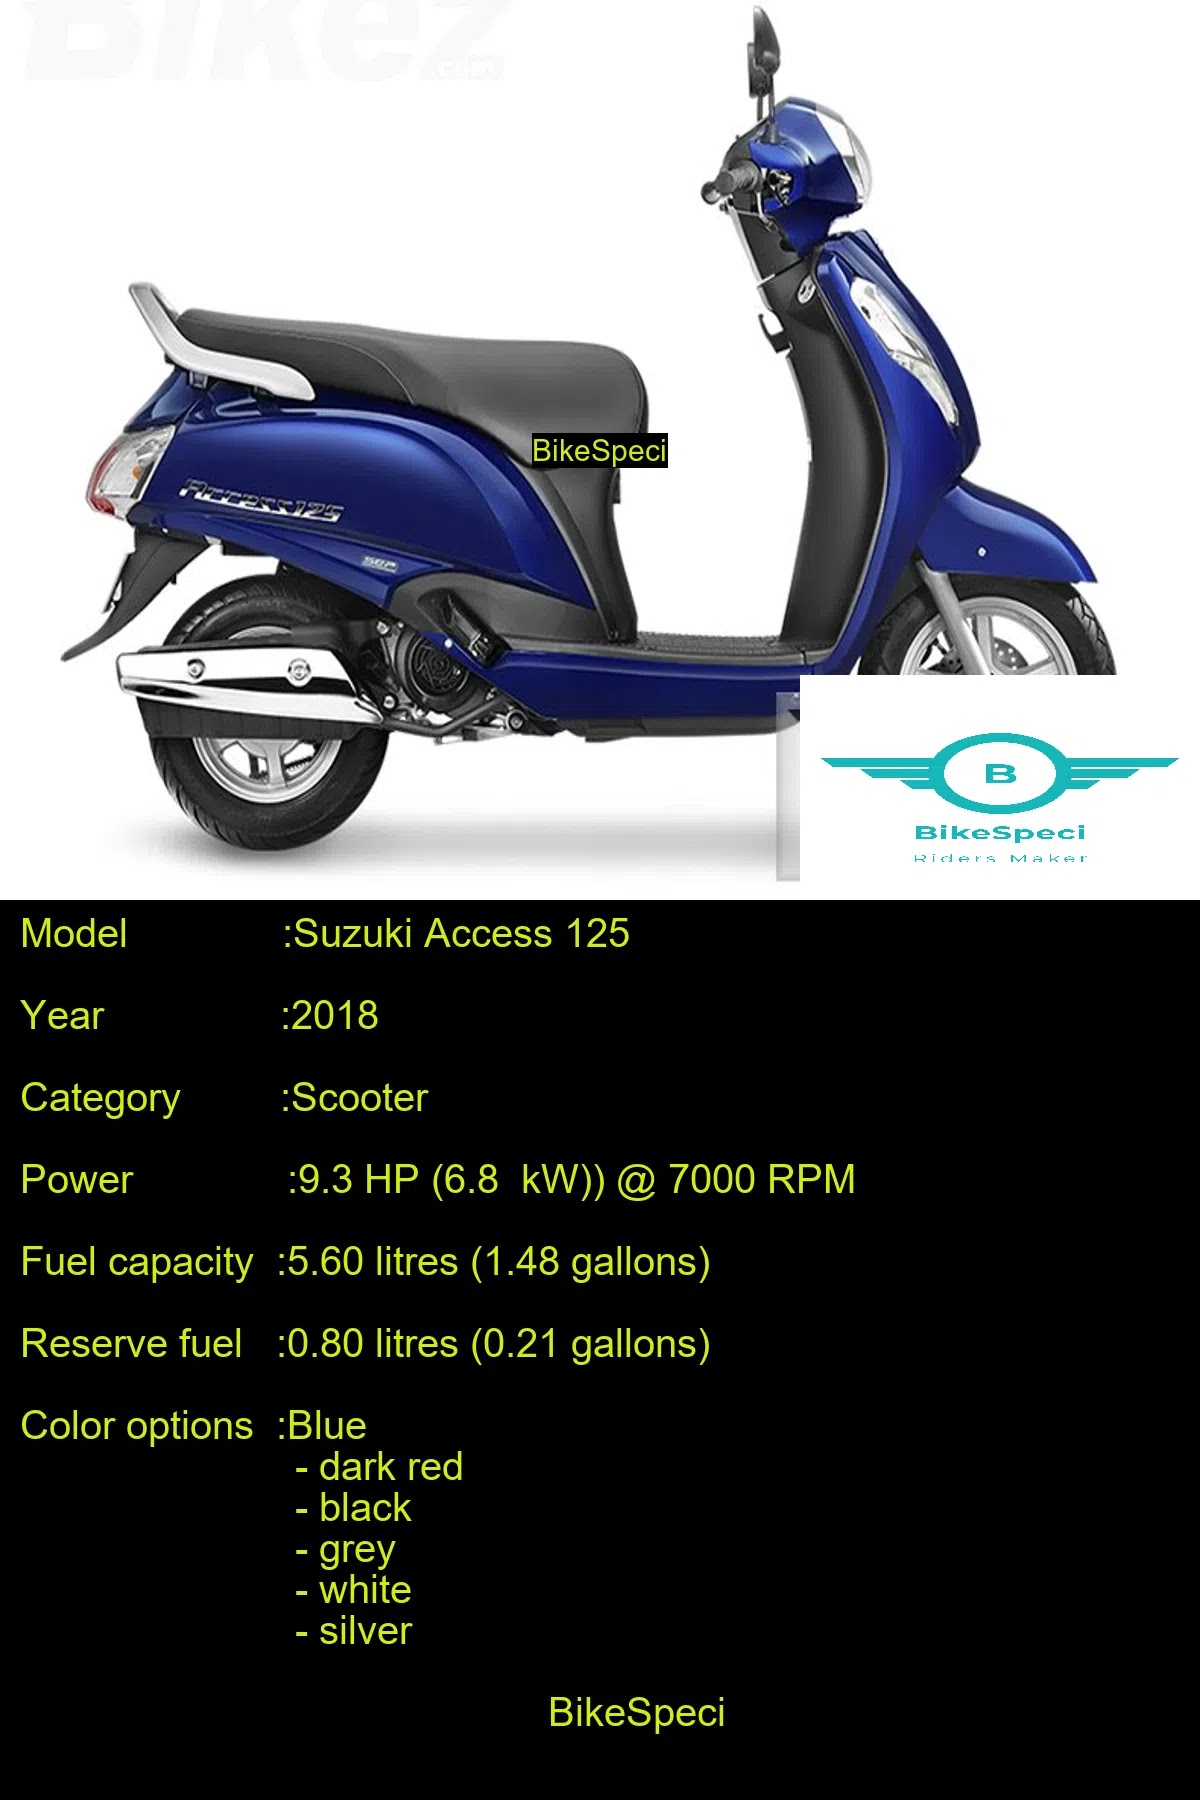 Suzuki Access 125 Price Photos Millage Speed Colours Etc Bikespeci Price Photos Millage Speed Colours Etc